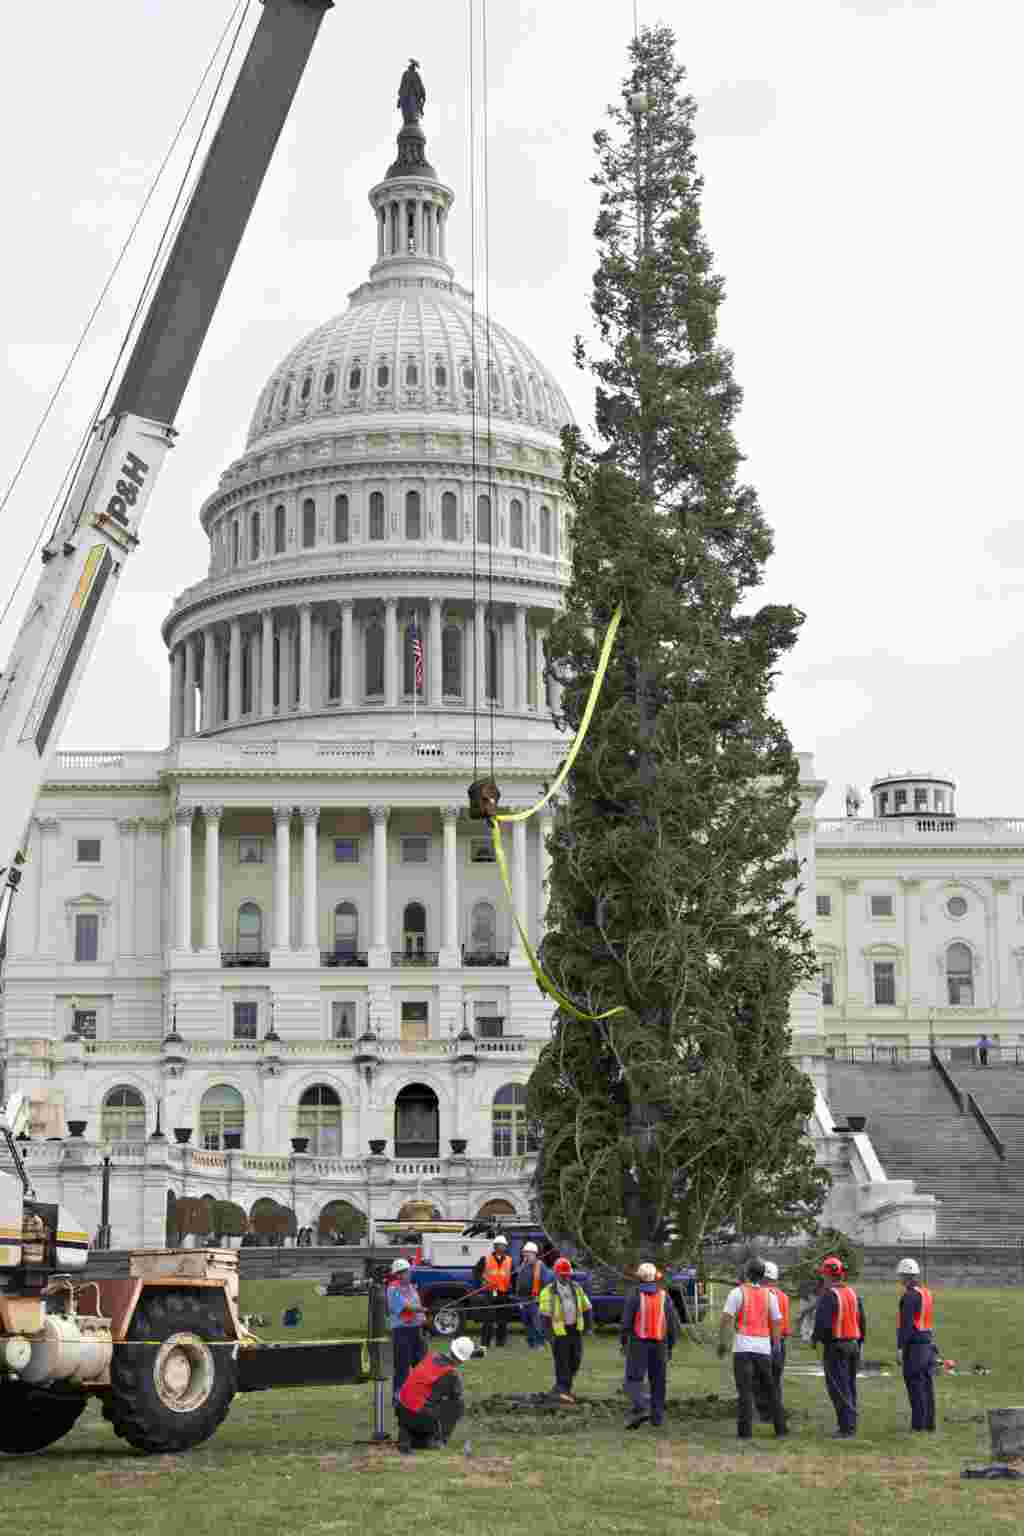 درخت کریسمس کنگره پس از سفر ۲۰ روزه به واشنگتن دی سی رسید